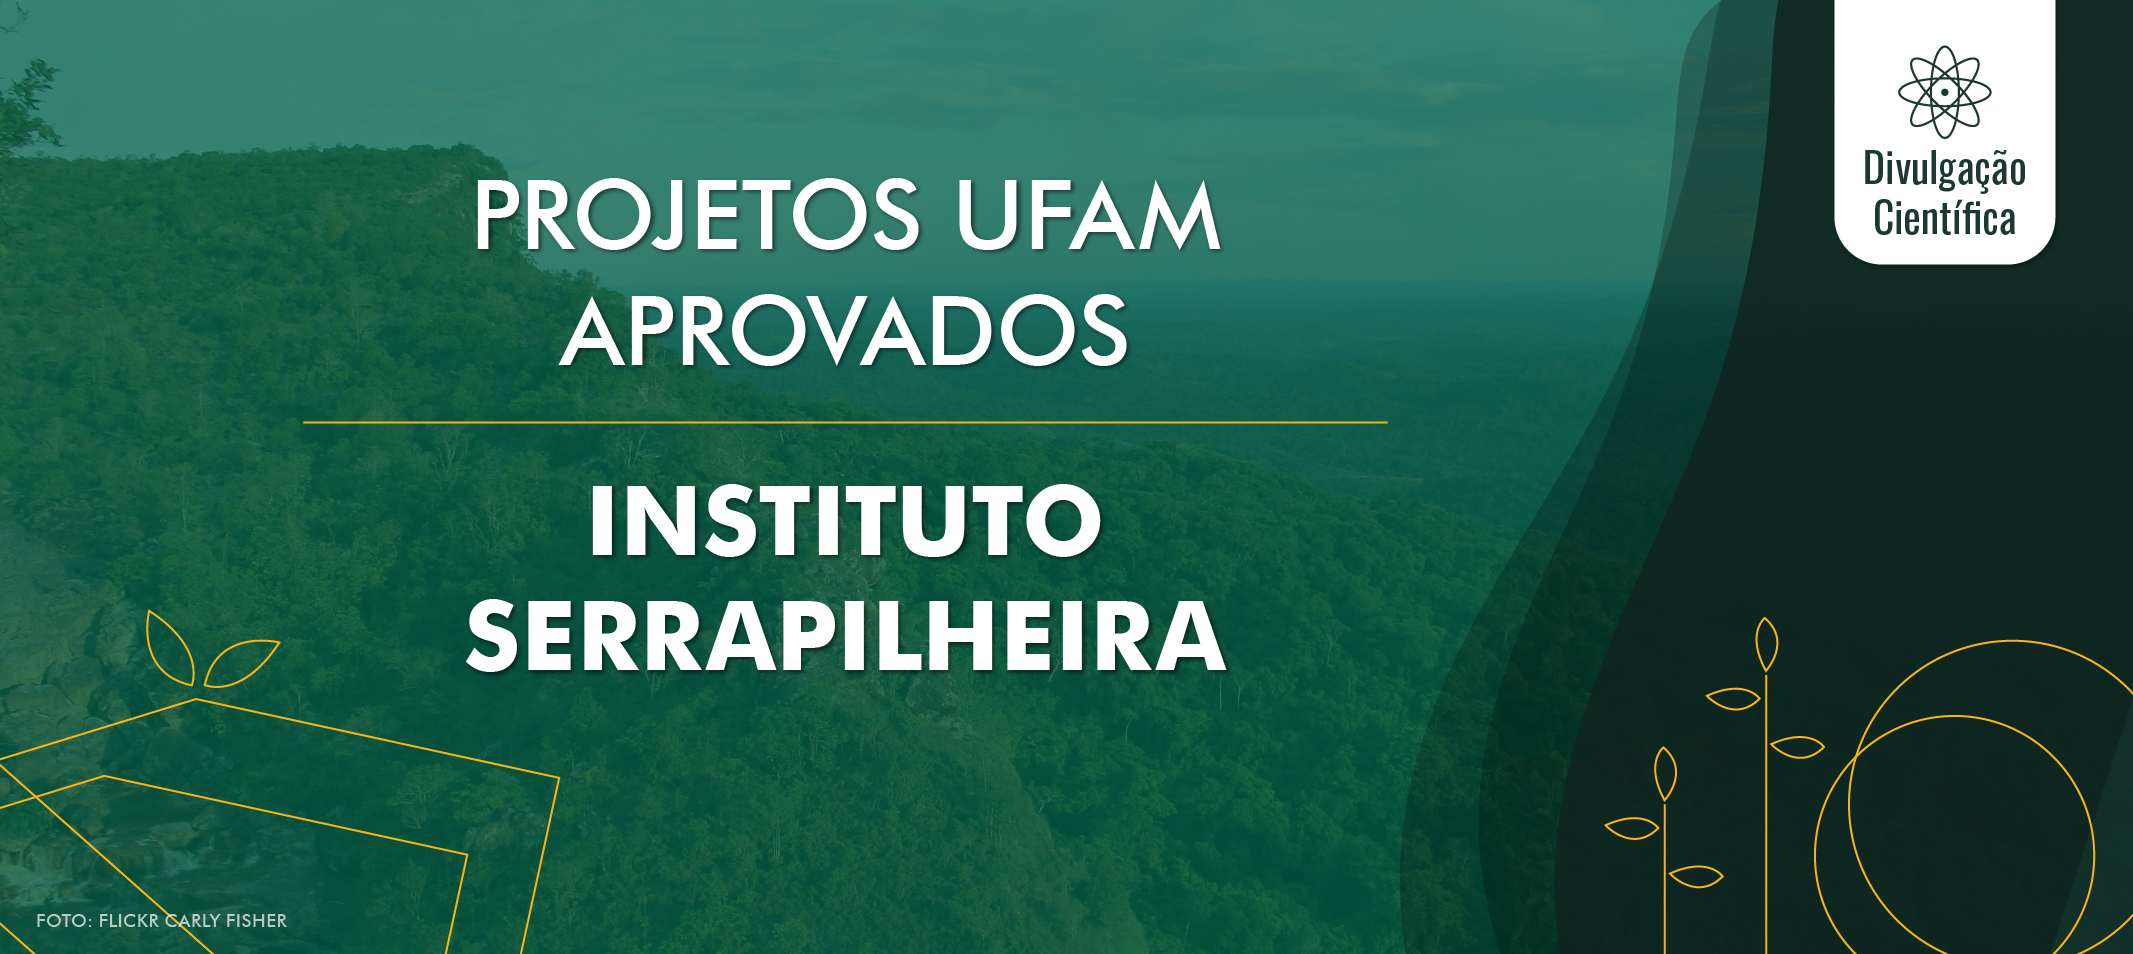 Inédito - Ufam tem dois projetos aprovados na sétima chamada pública de apoio à ciência do Instituto Serrapilheira